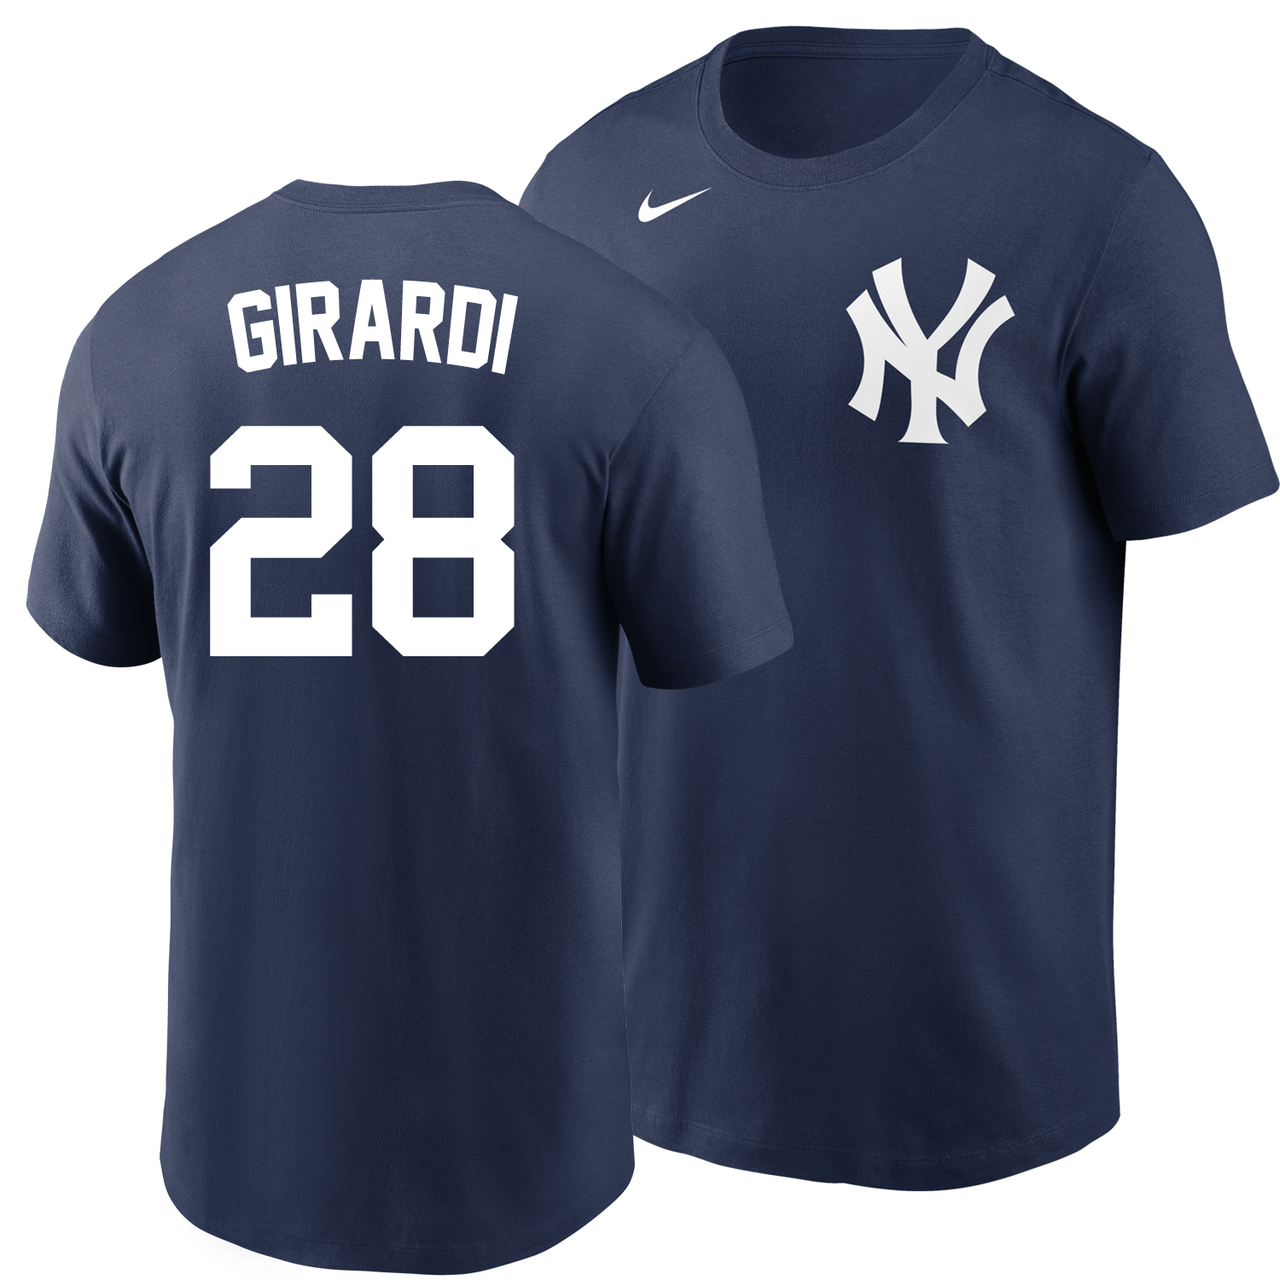 Harrison Bader Yankees Nike Jerseys, Shirts and Souvenirs